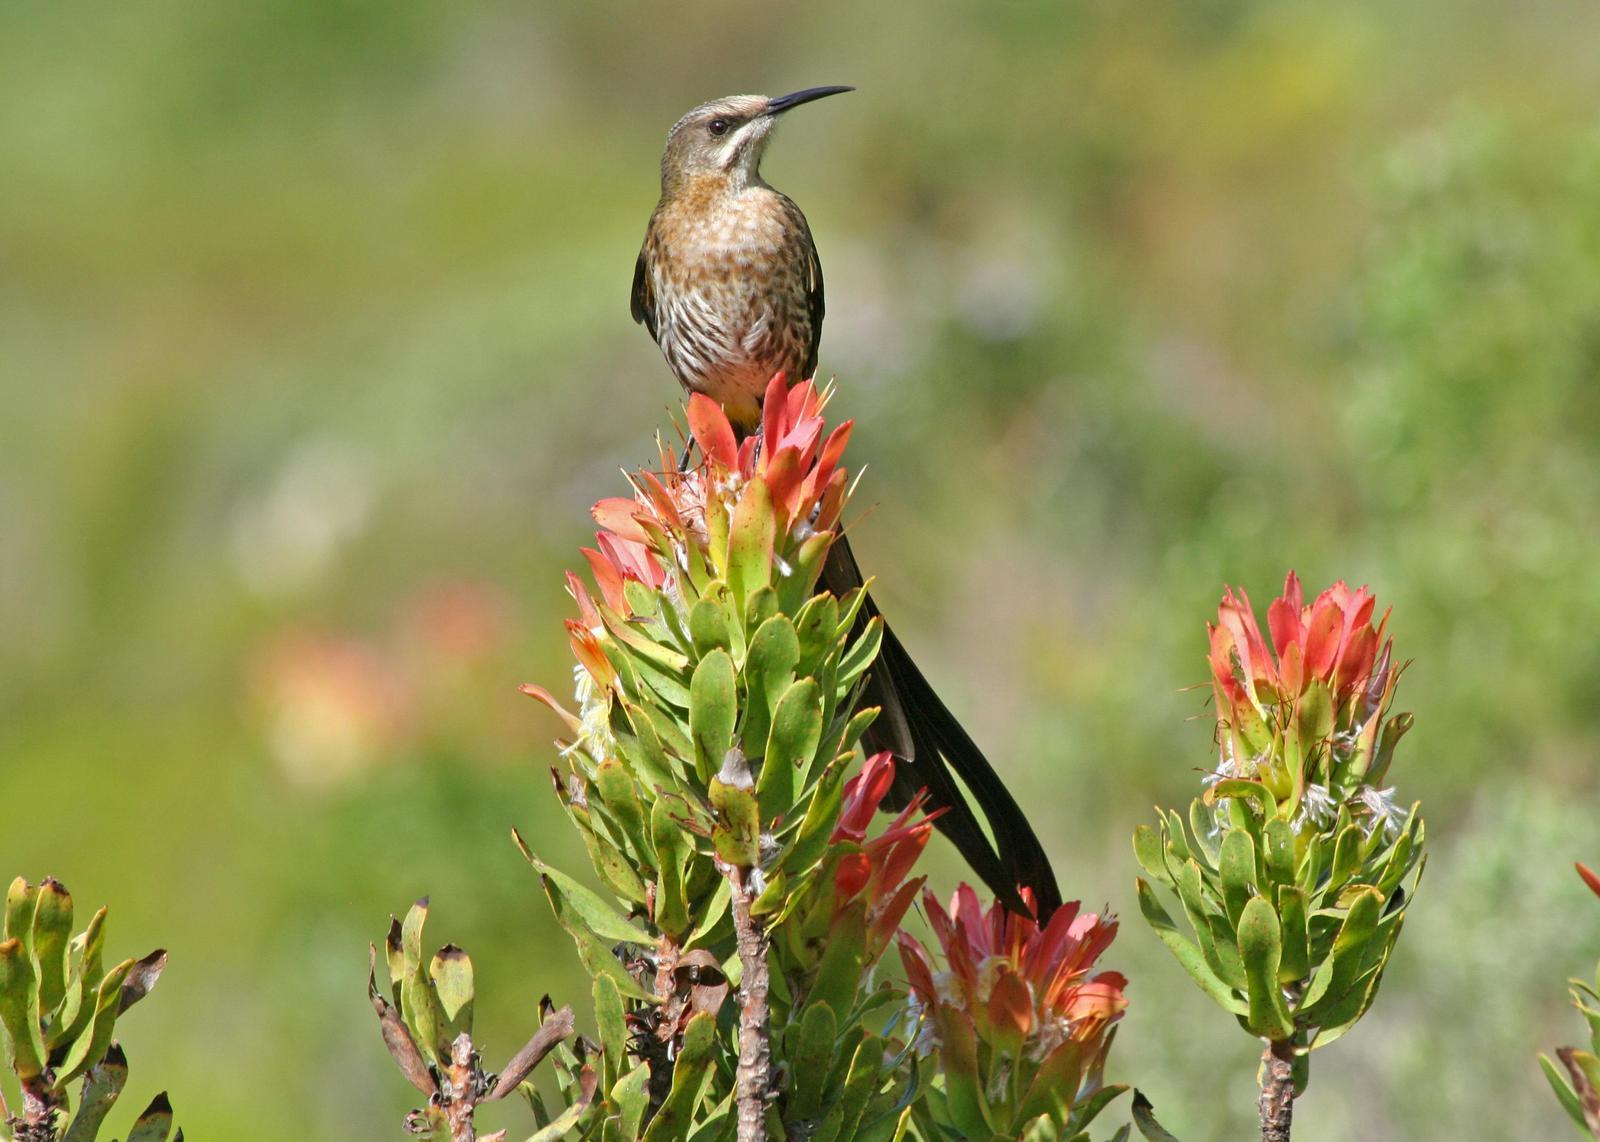 Cape Sugarbird Photo by Ethan Kistler